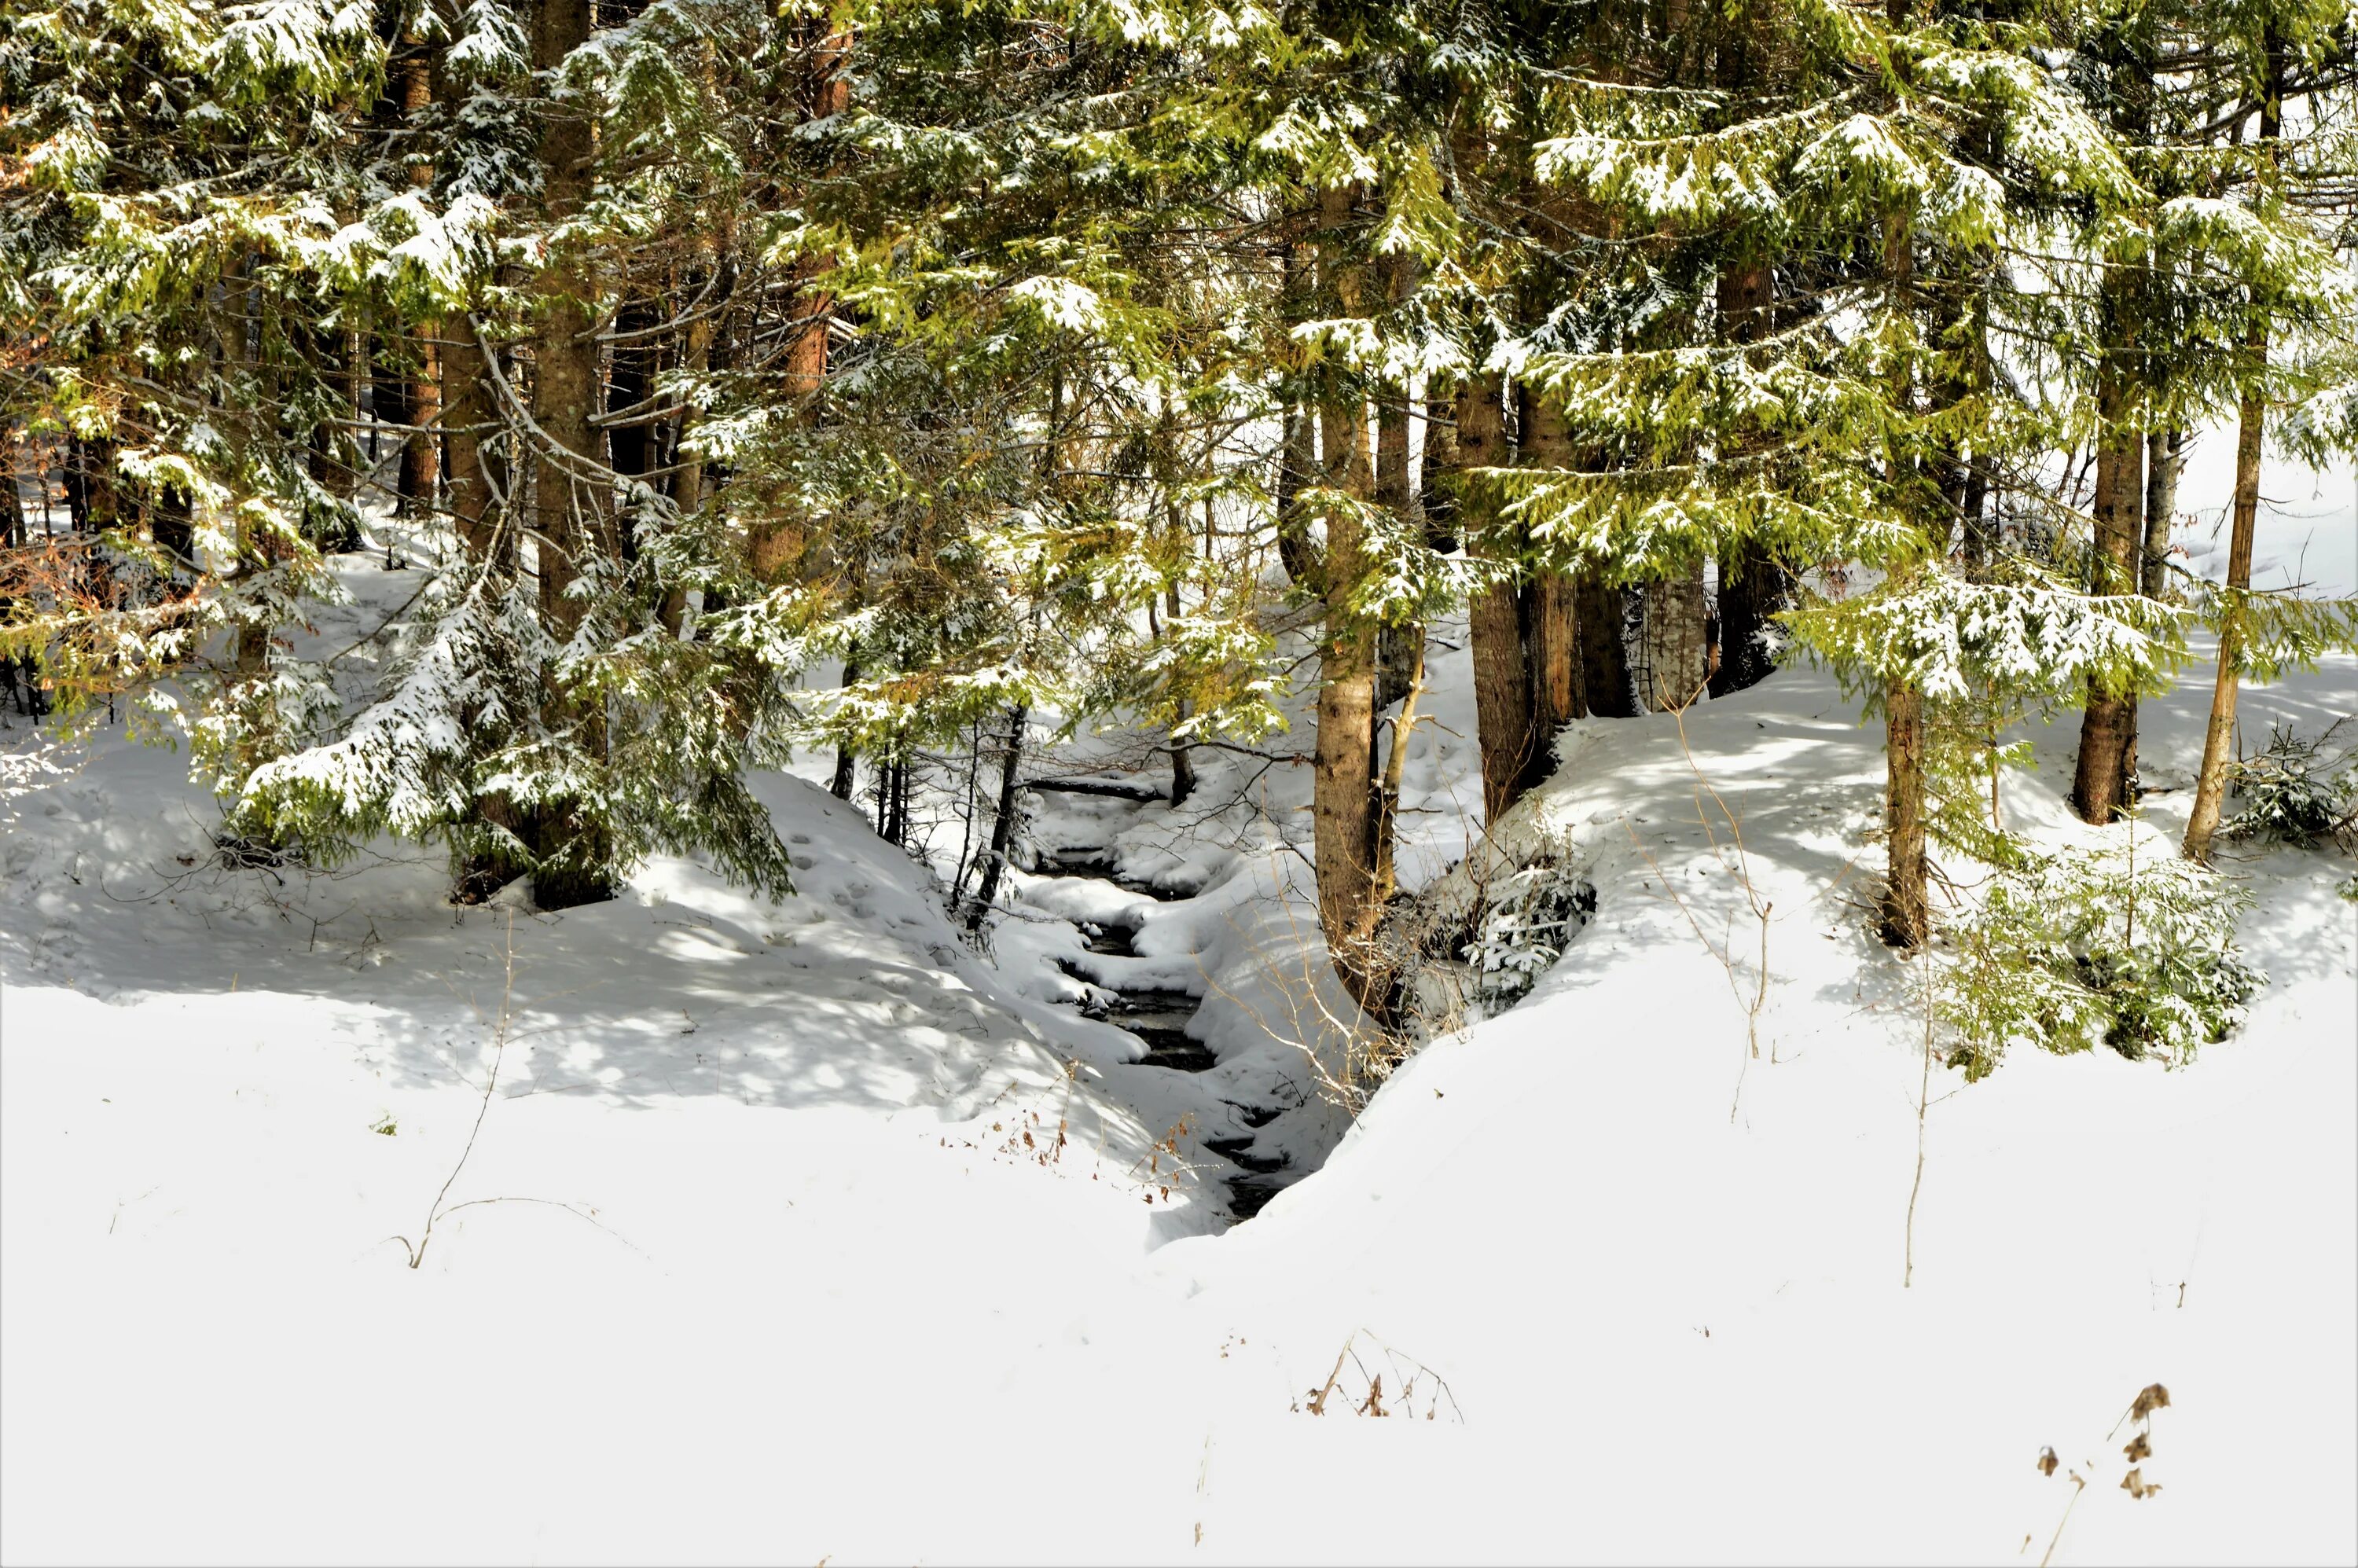 Сугробы в лесу. Лес заваленный снегом. Глубокий снег в лесу. Горка лес зима. Снег еще лежал сугробами в глубоких